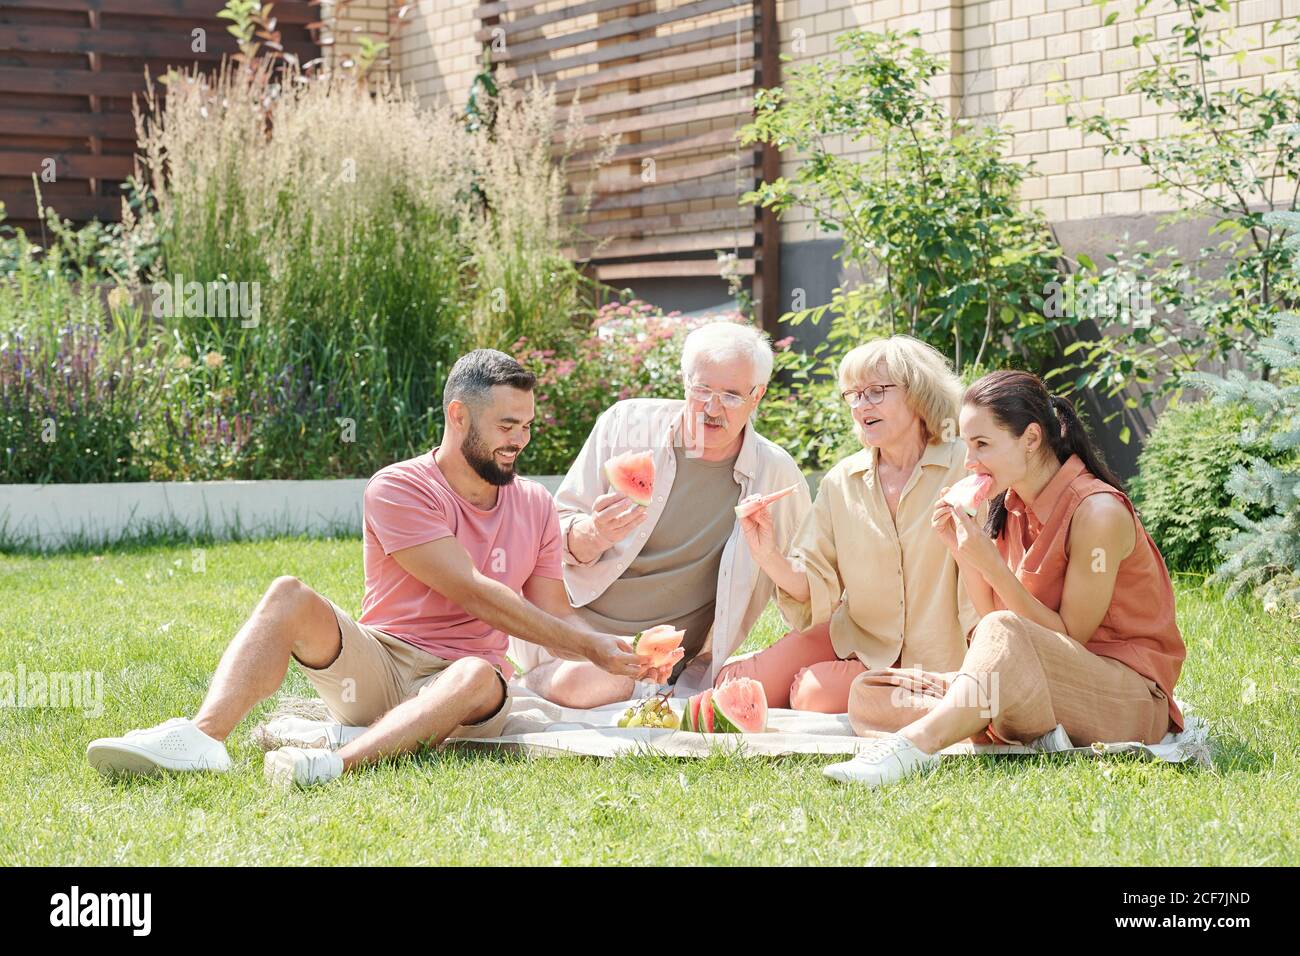 Foto familiar de un hombre y una mujer de edad avanzada que se va a hacer un picnic con sus hijos mayores en el césped, espacio de copia Foto de stock